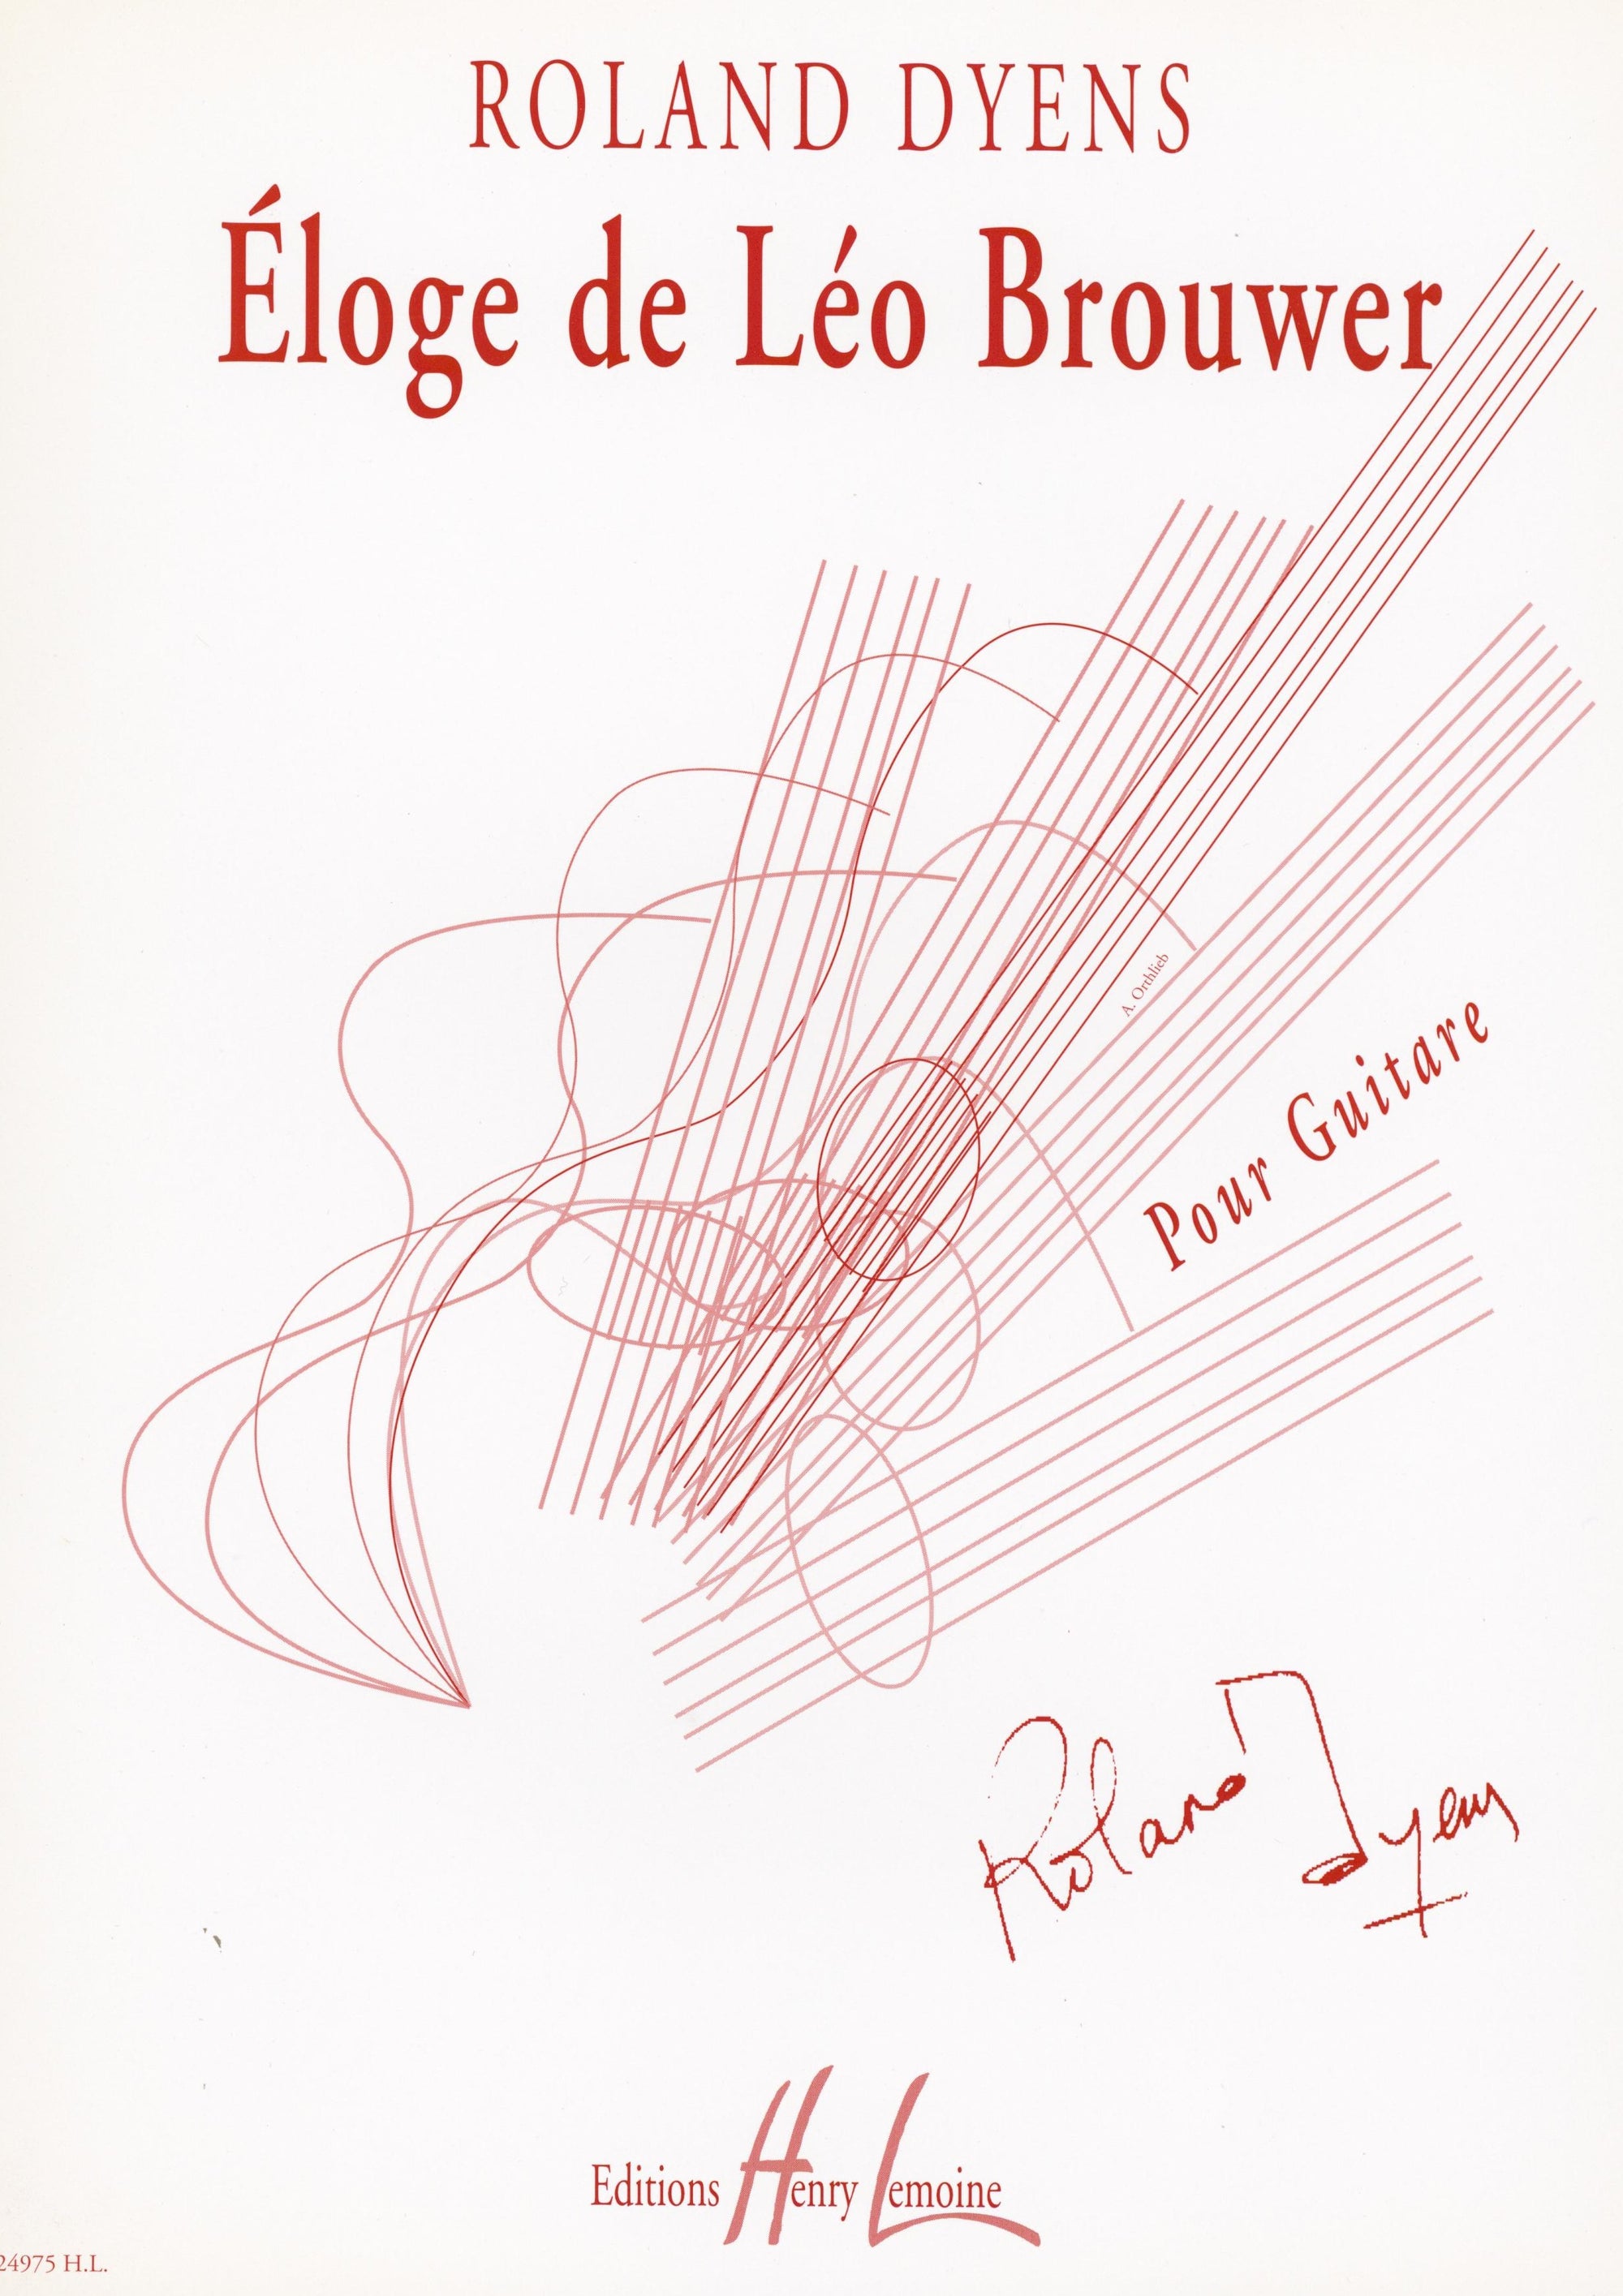 Dyens: Éloge de Léo Brouwer